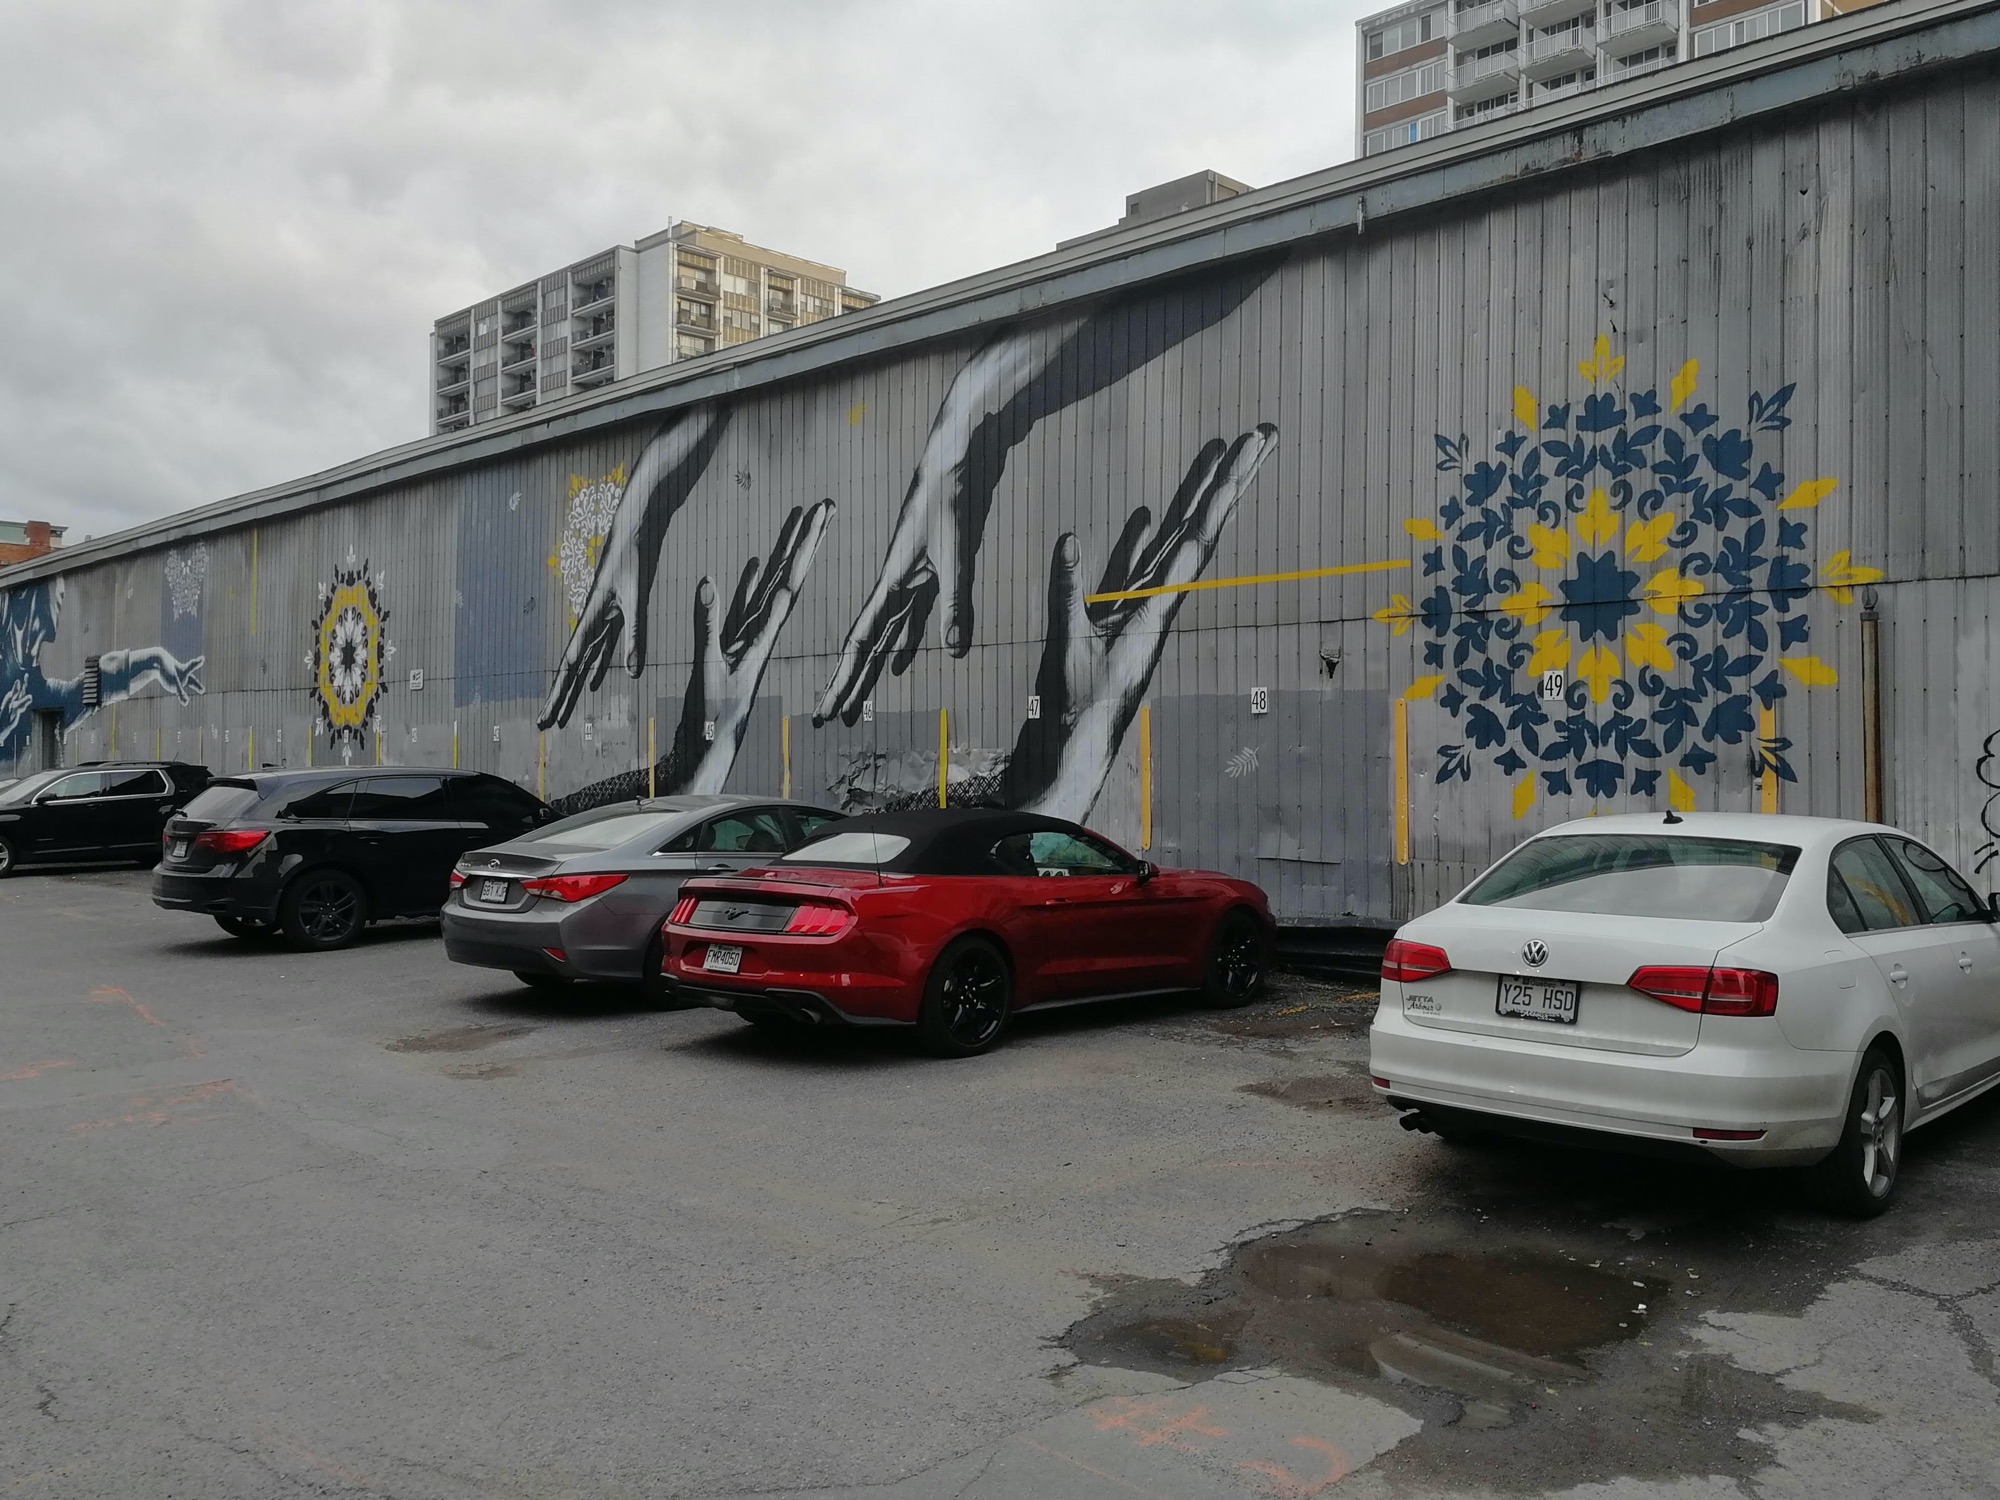 Graffiti 2949 La danse des mains légères de Mathieu Bories capturé par Rabot à Montréal Canada